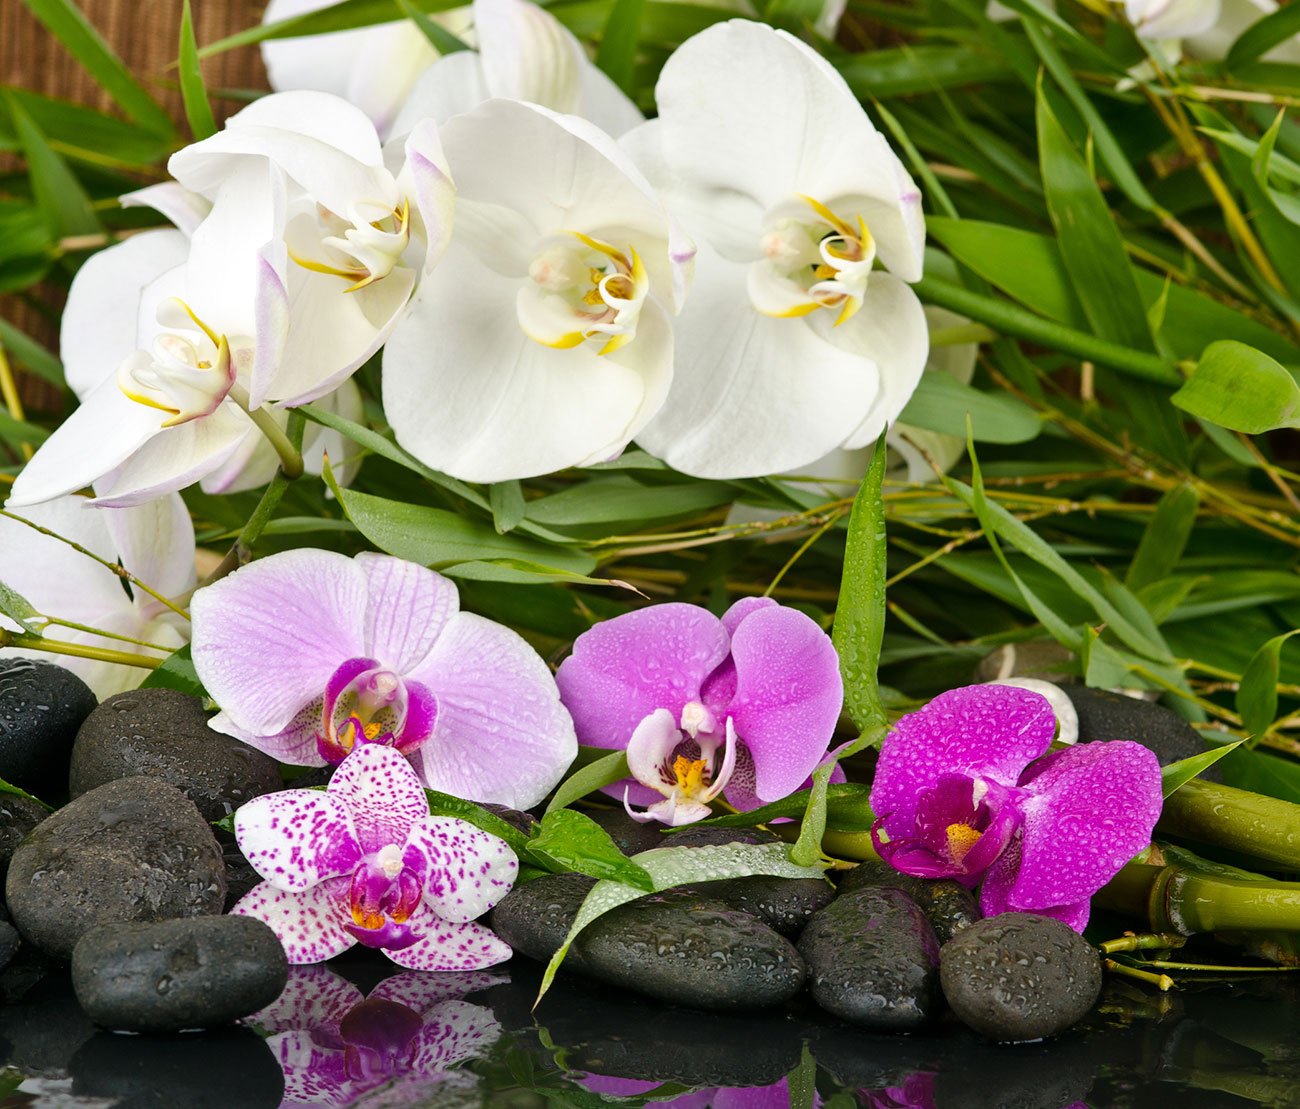 Quadro Orquídeas Brancas e Violeta